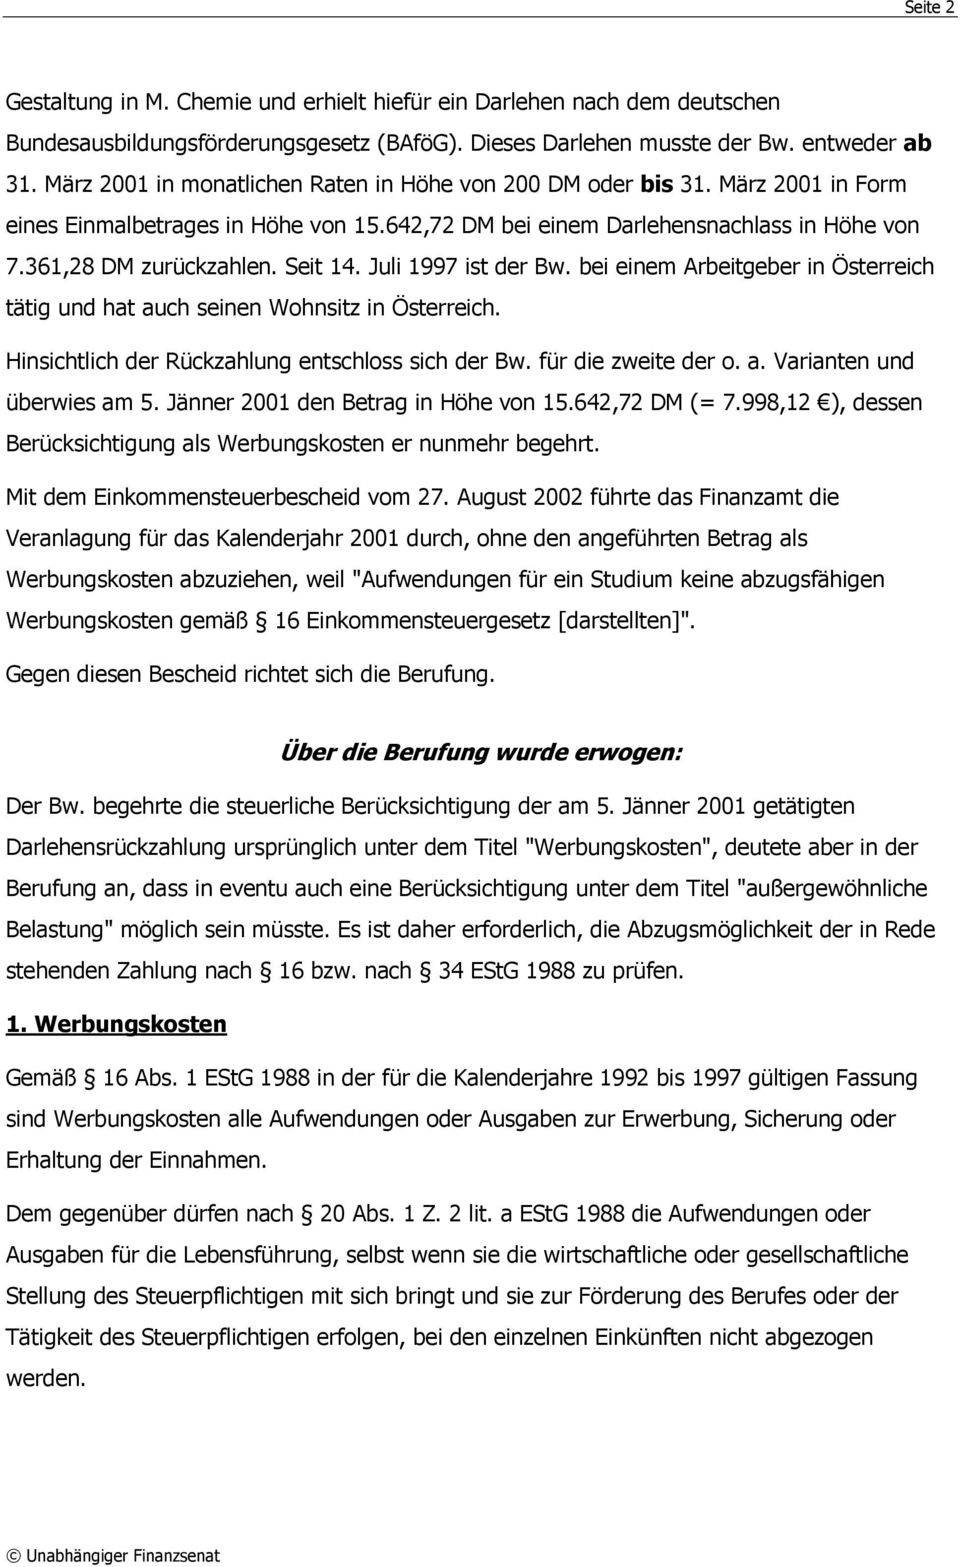 Seit 14. Juli 1997 ist der Bw. bei einem Arbeitgeber in Österreich tätig und hat auch seinen Wohnsitz in Österreich. Hinsichtlich der Rückzahlung entschloss sich der Bw. für die zweite der o. a. Varianten und überwies am 5.